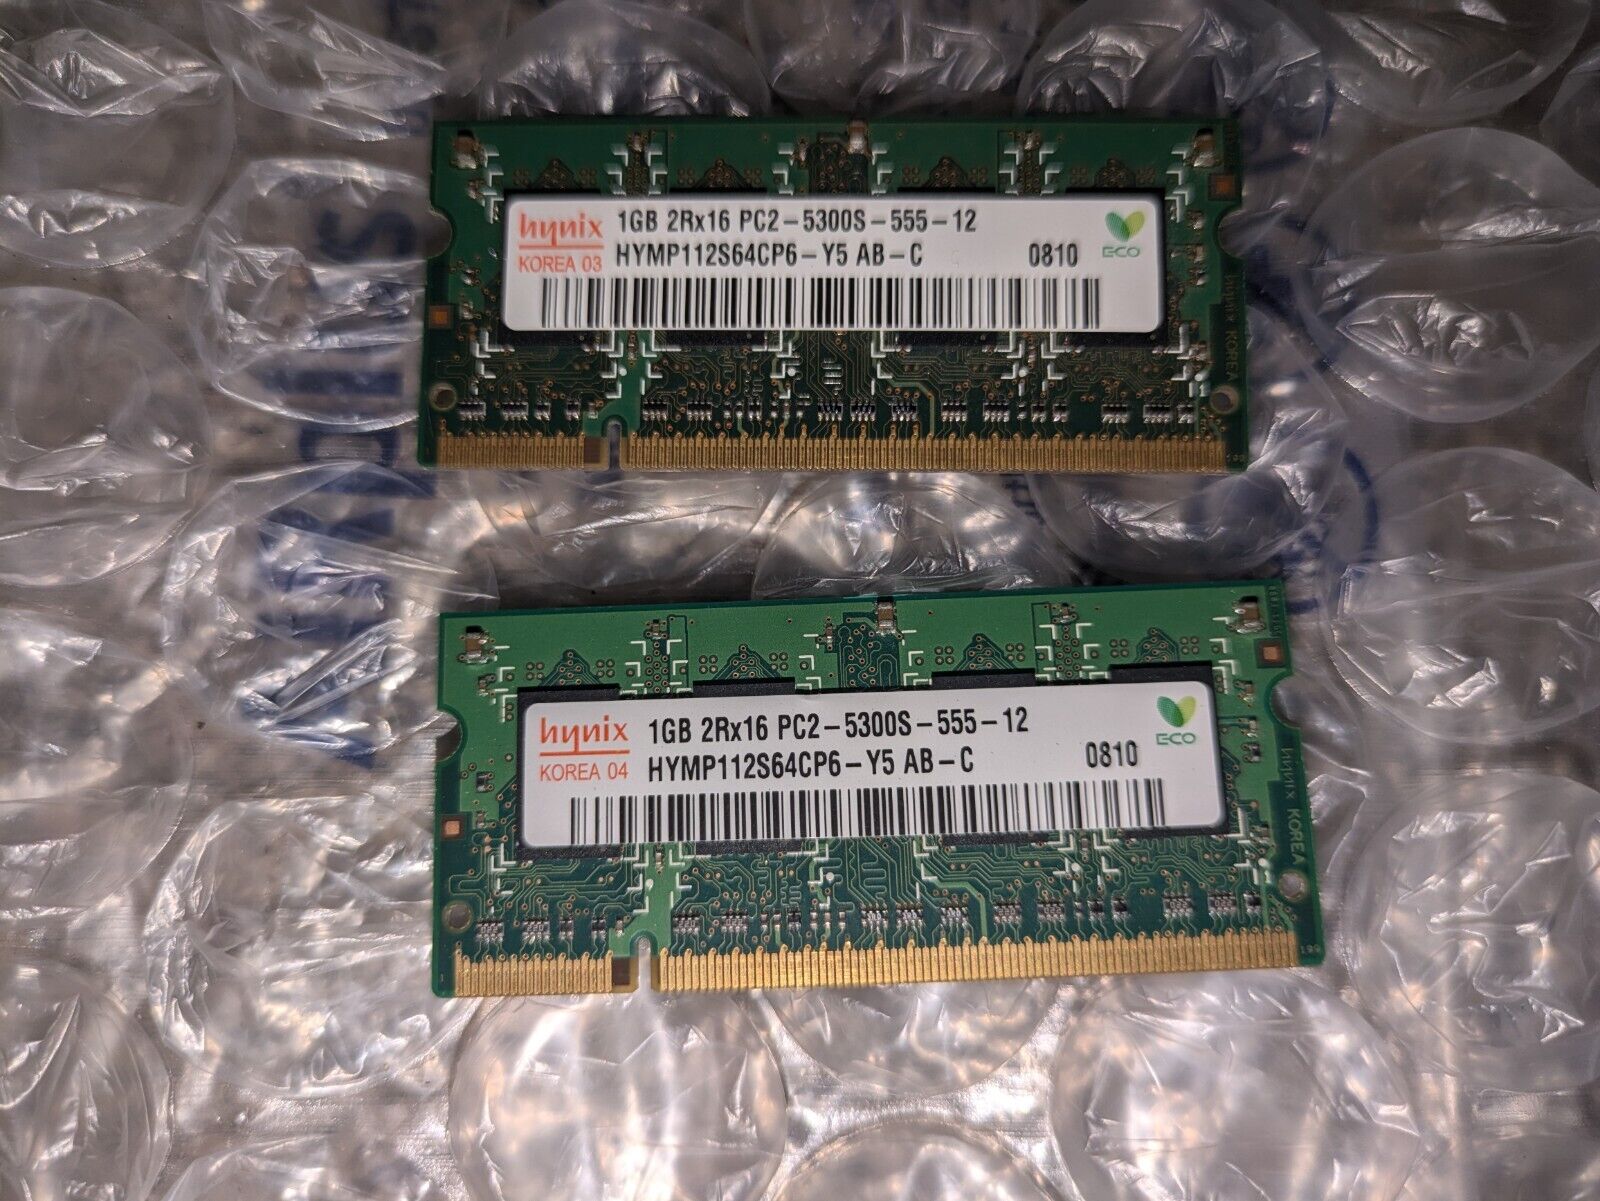 HYNIX DDR2 1 GB 2RX16 PC2-5300S-555-12 HYMP112S64CP6-Y5 AB  Quantity Of 2